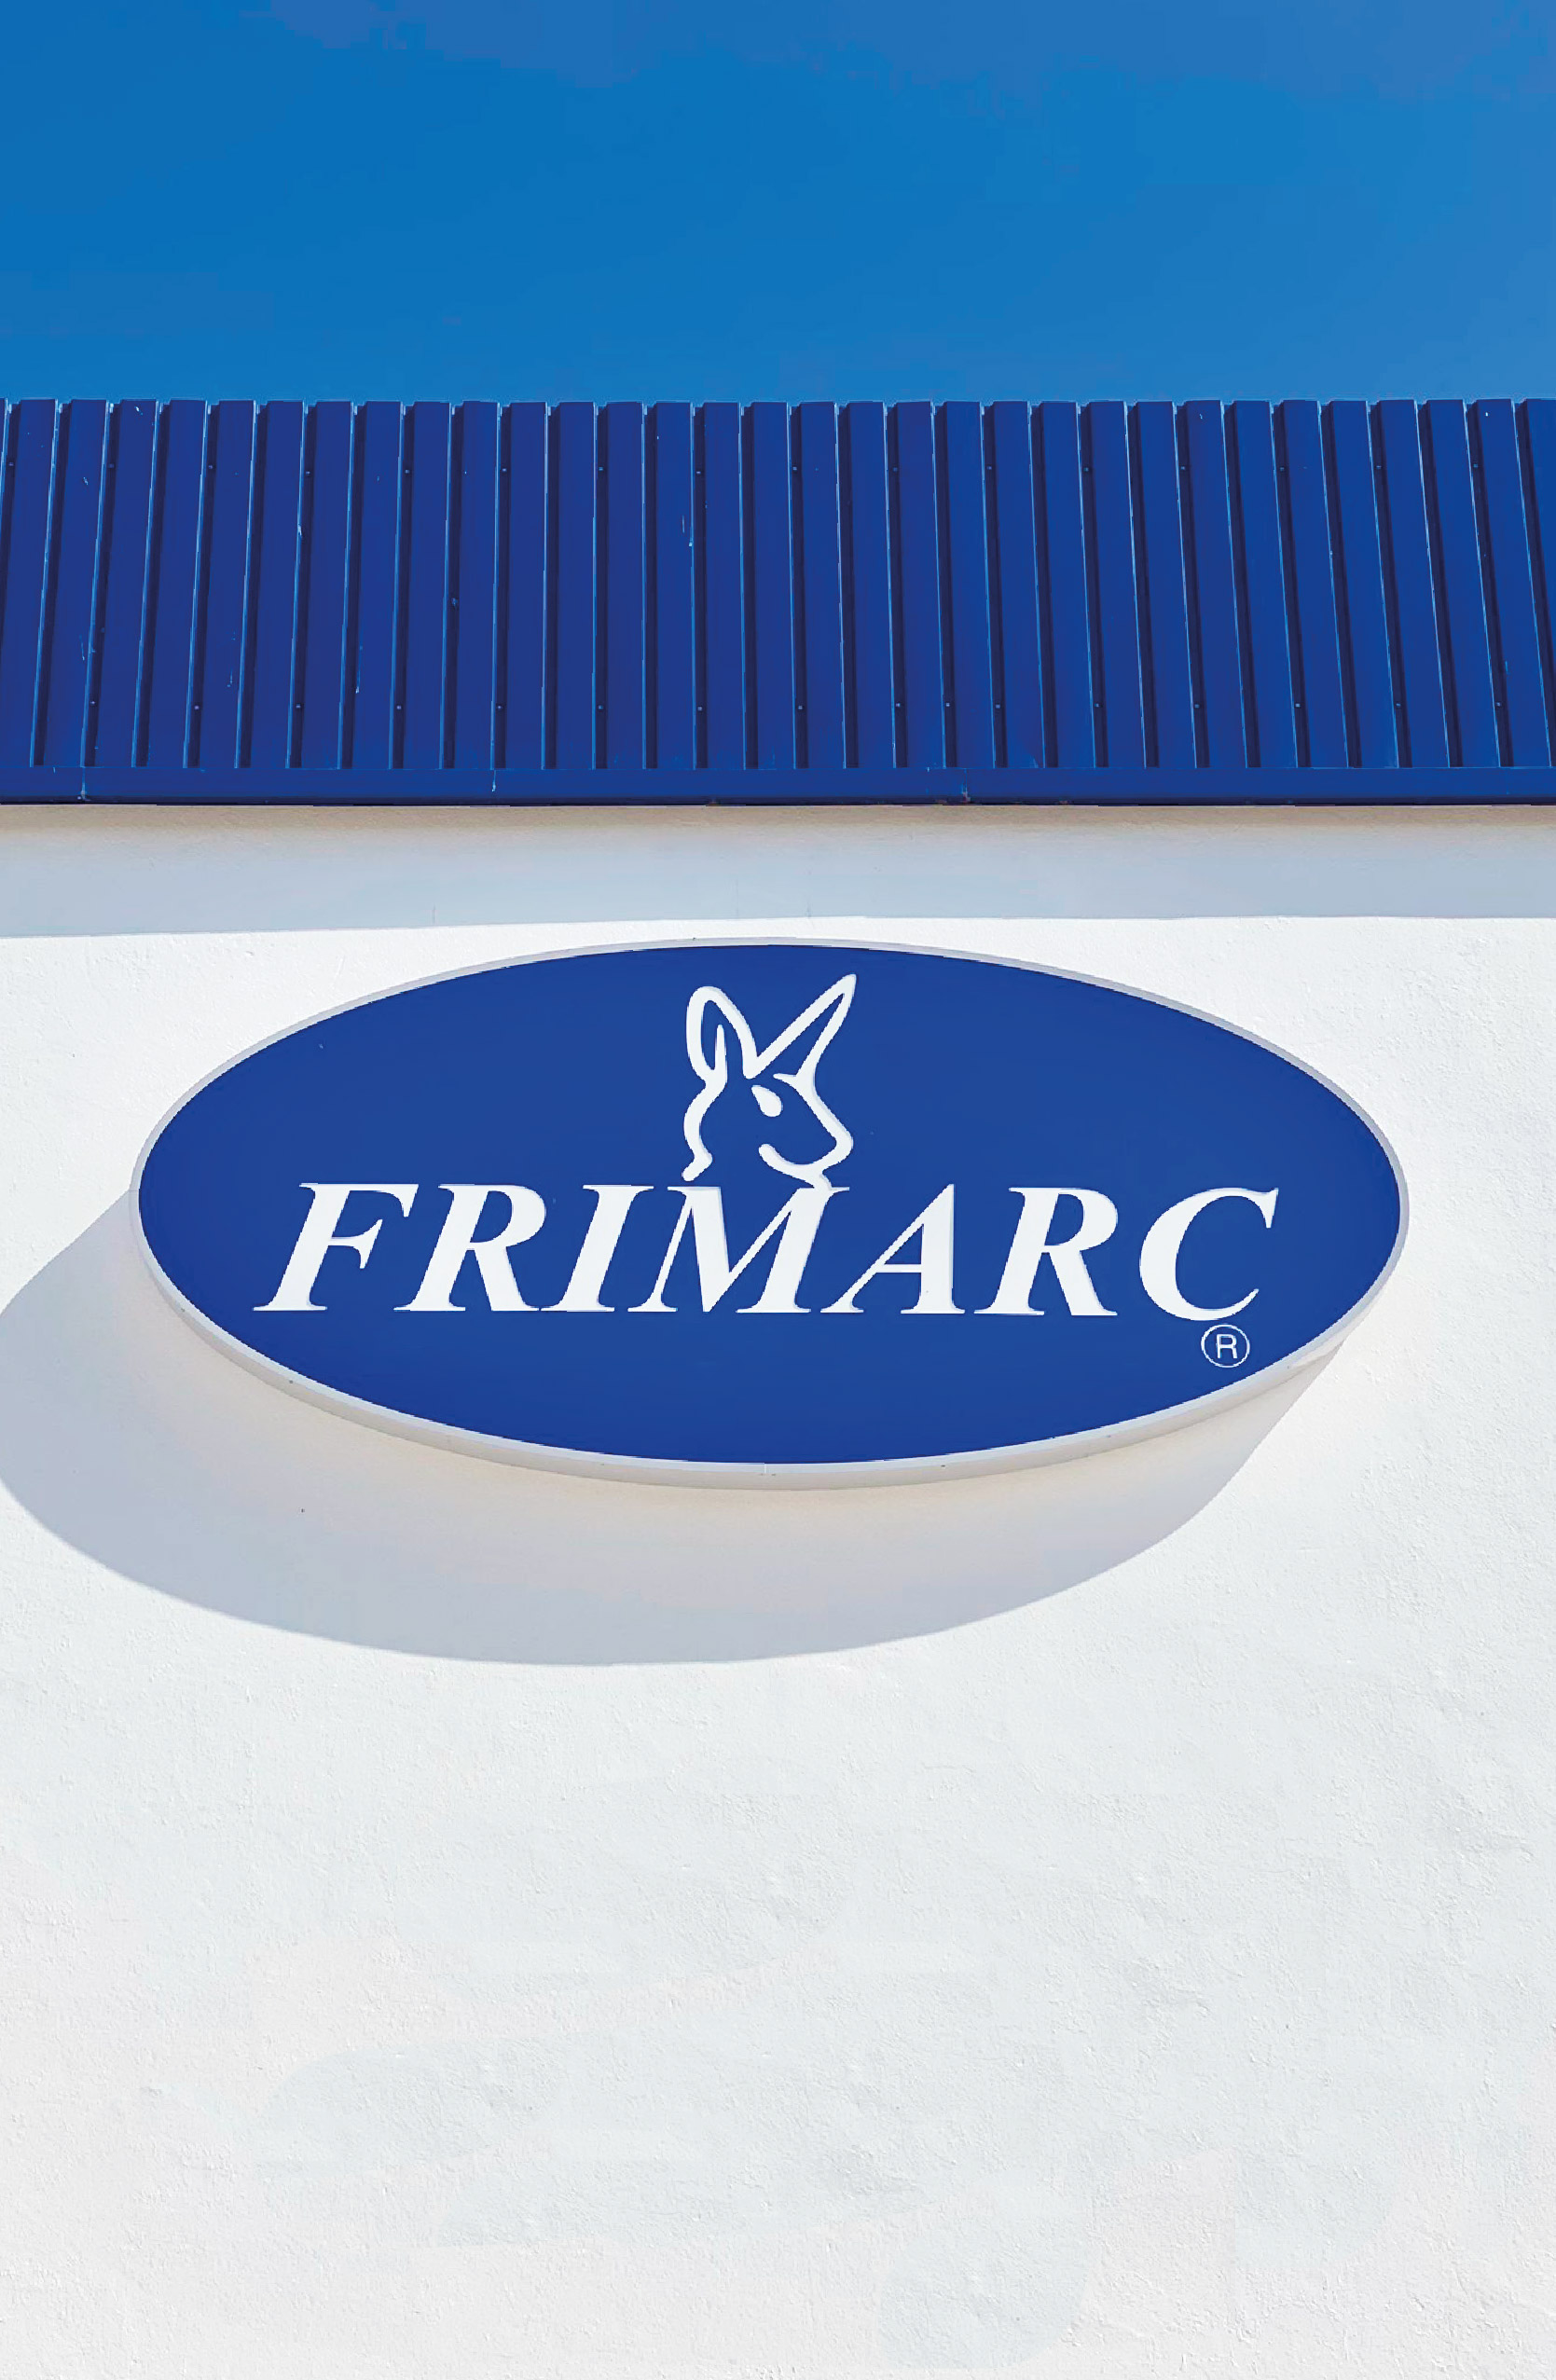 FRIMARC Comércio e Distribuição